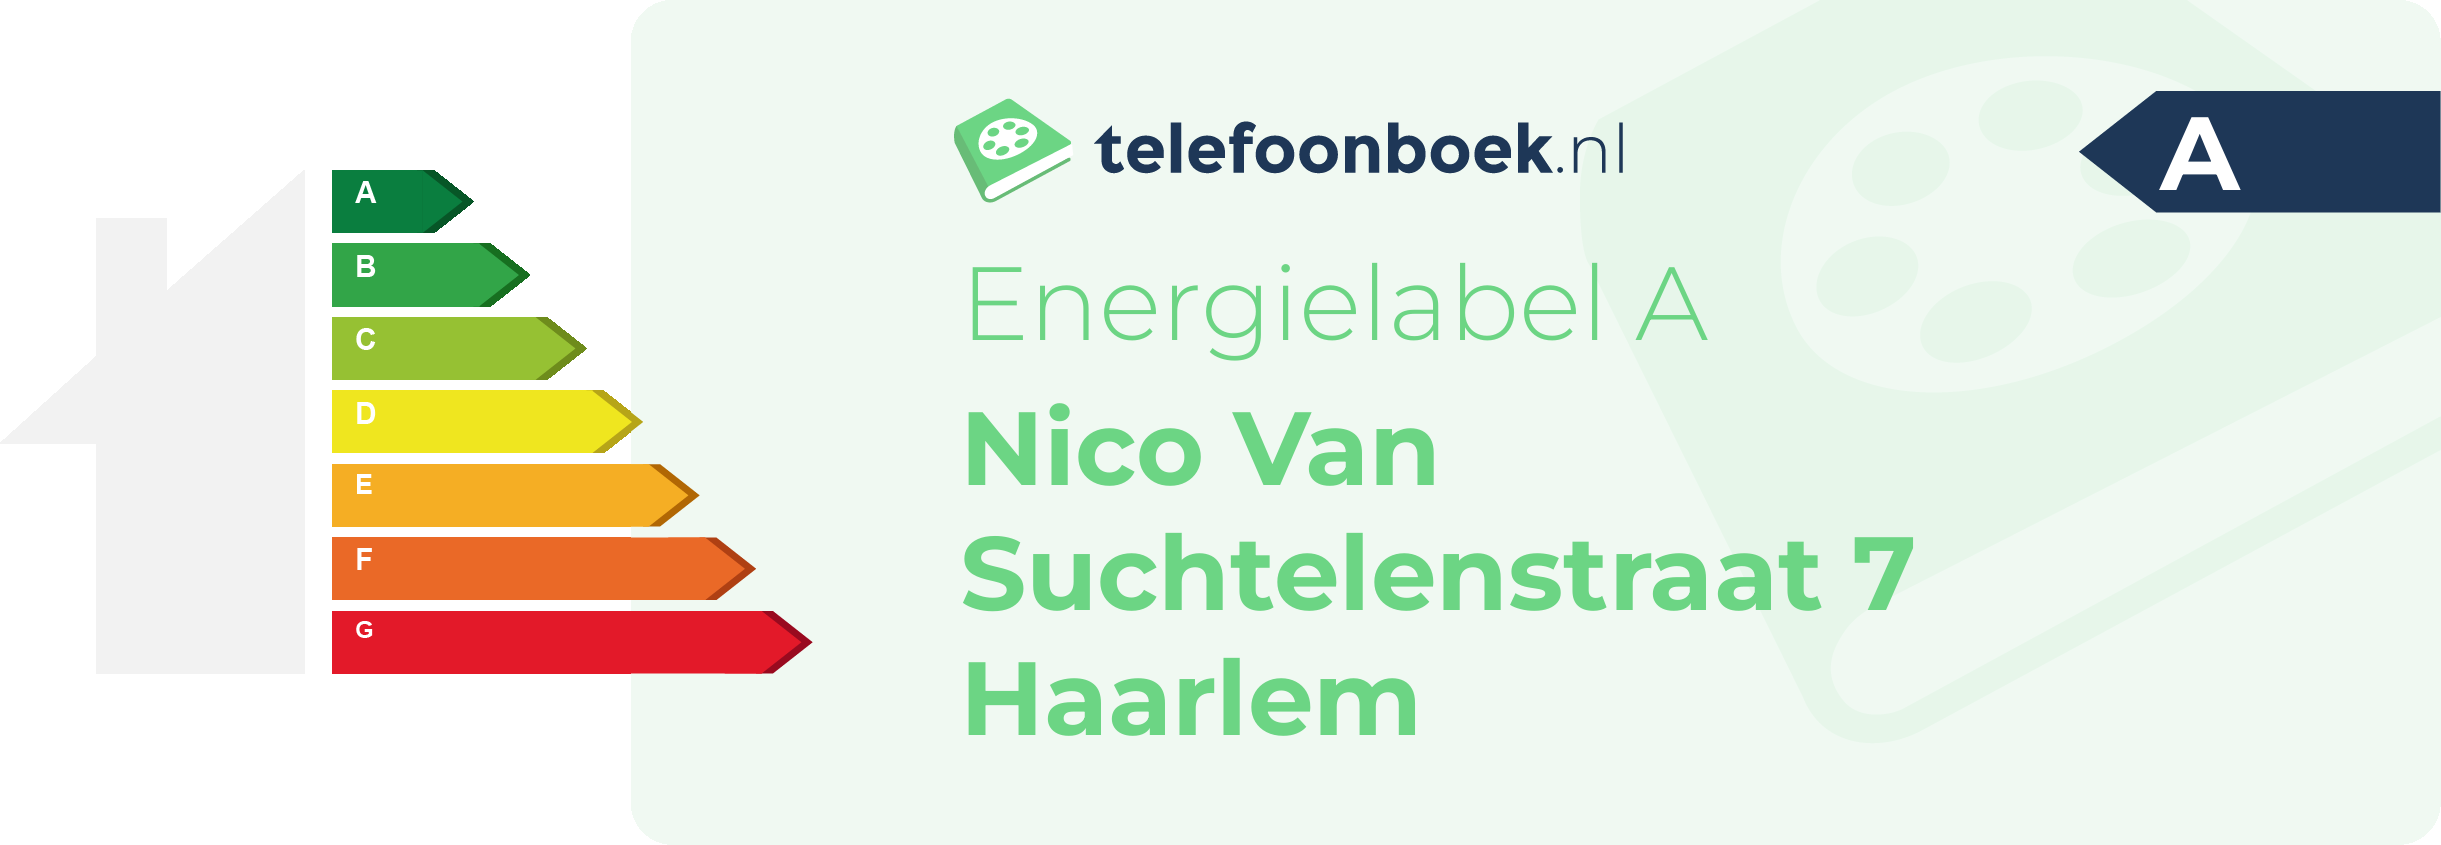 Energielabel Nico Van Suchtelenstraat 7 Haarlem